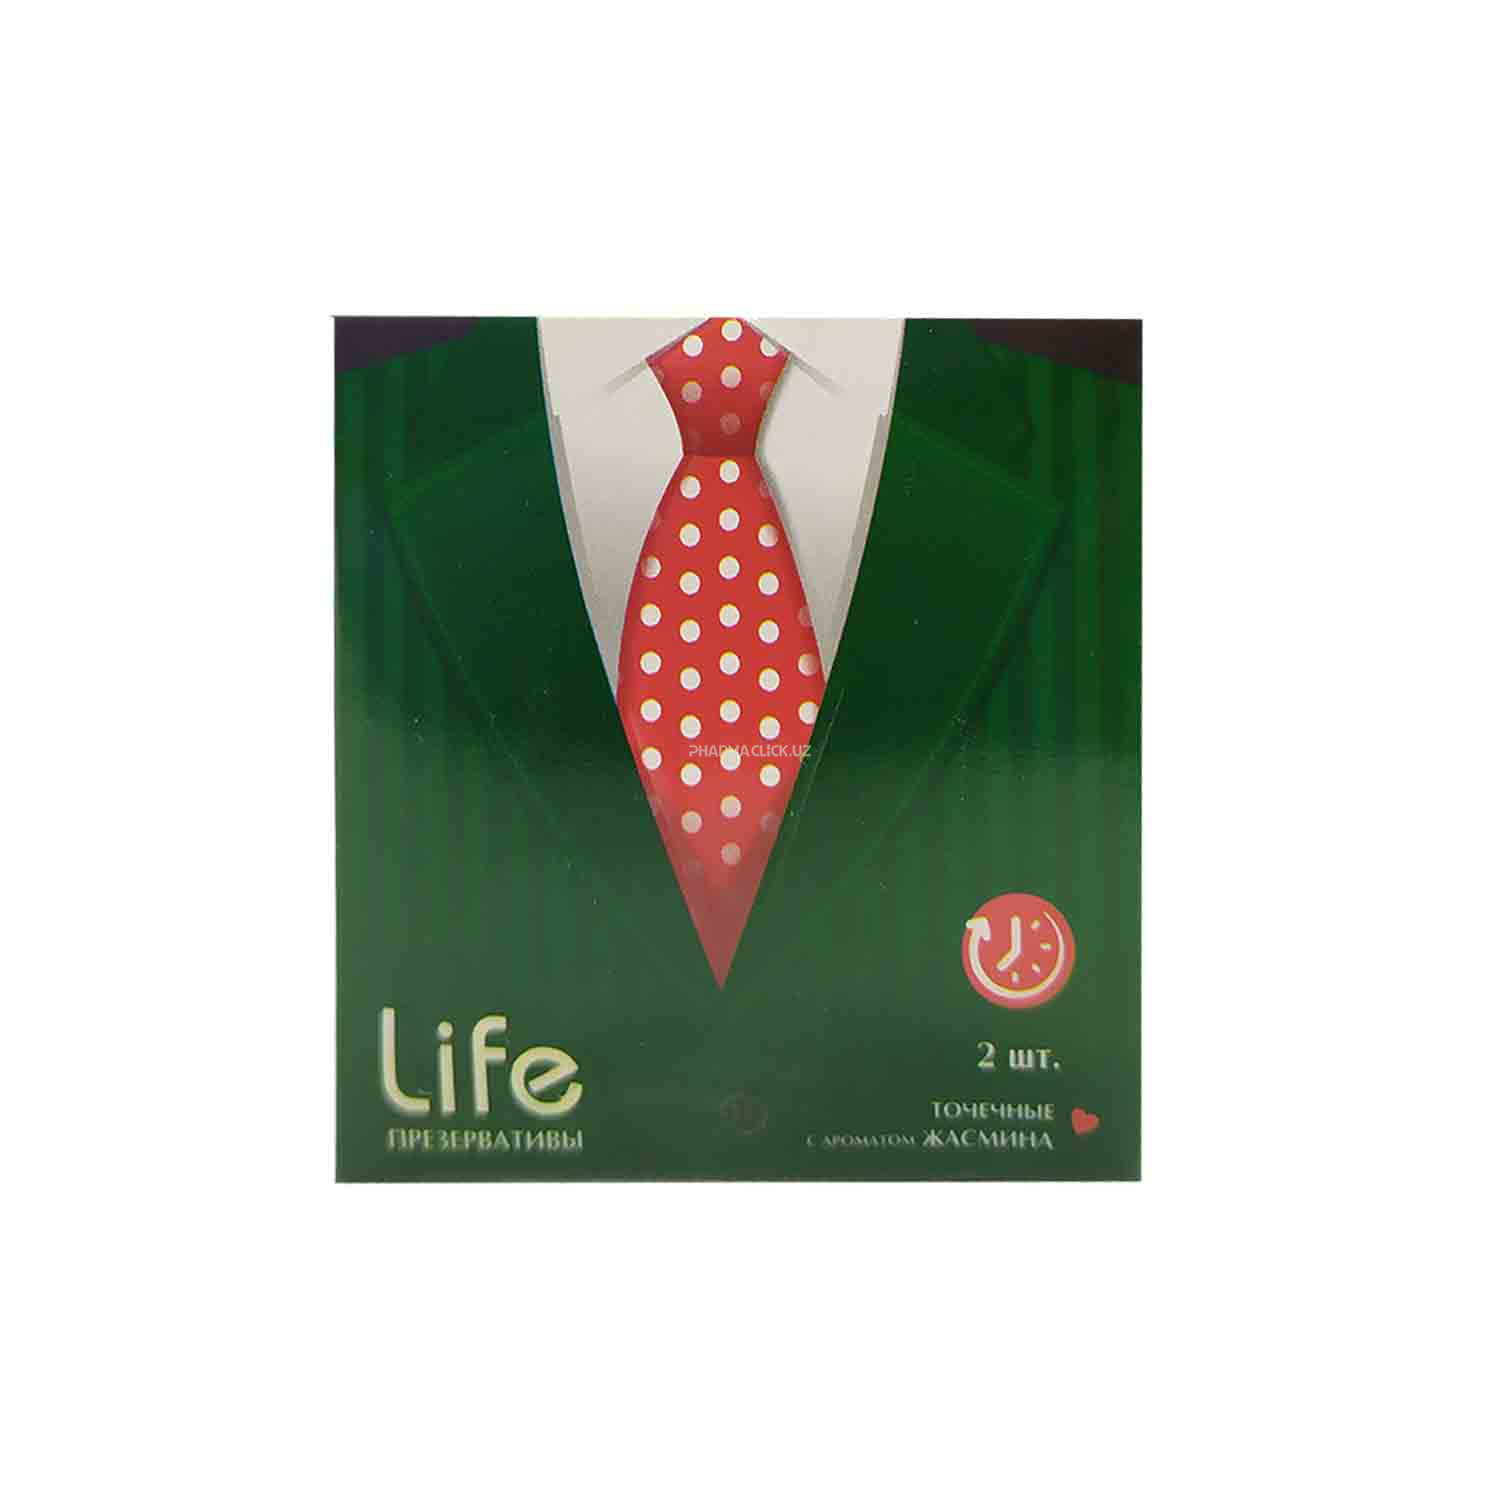 Натуральные резиновые латексные презервативы Life №2 точечные с ароматом жасмина